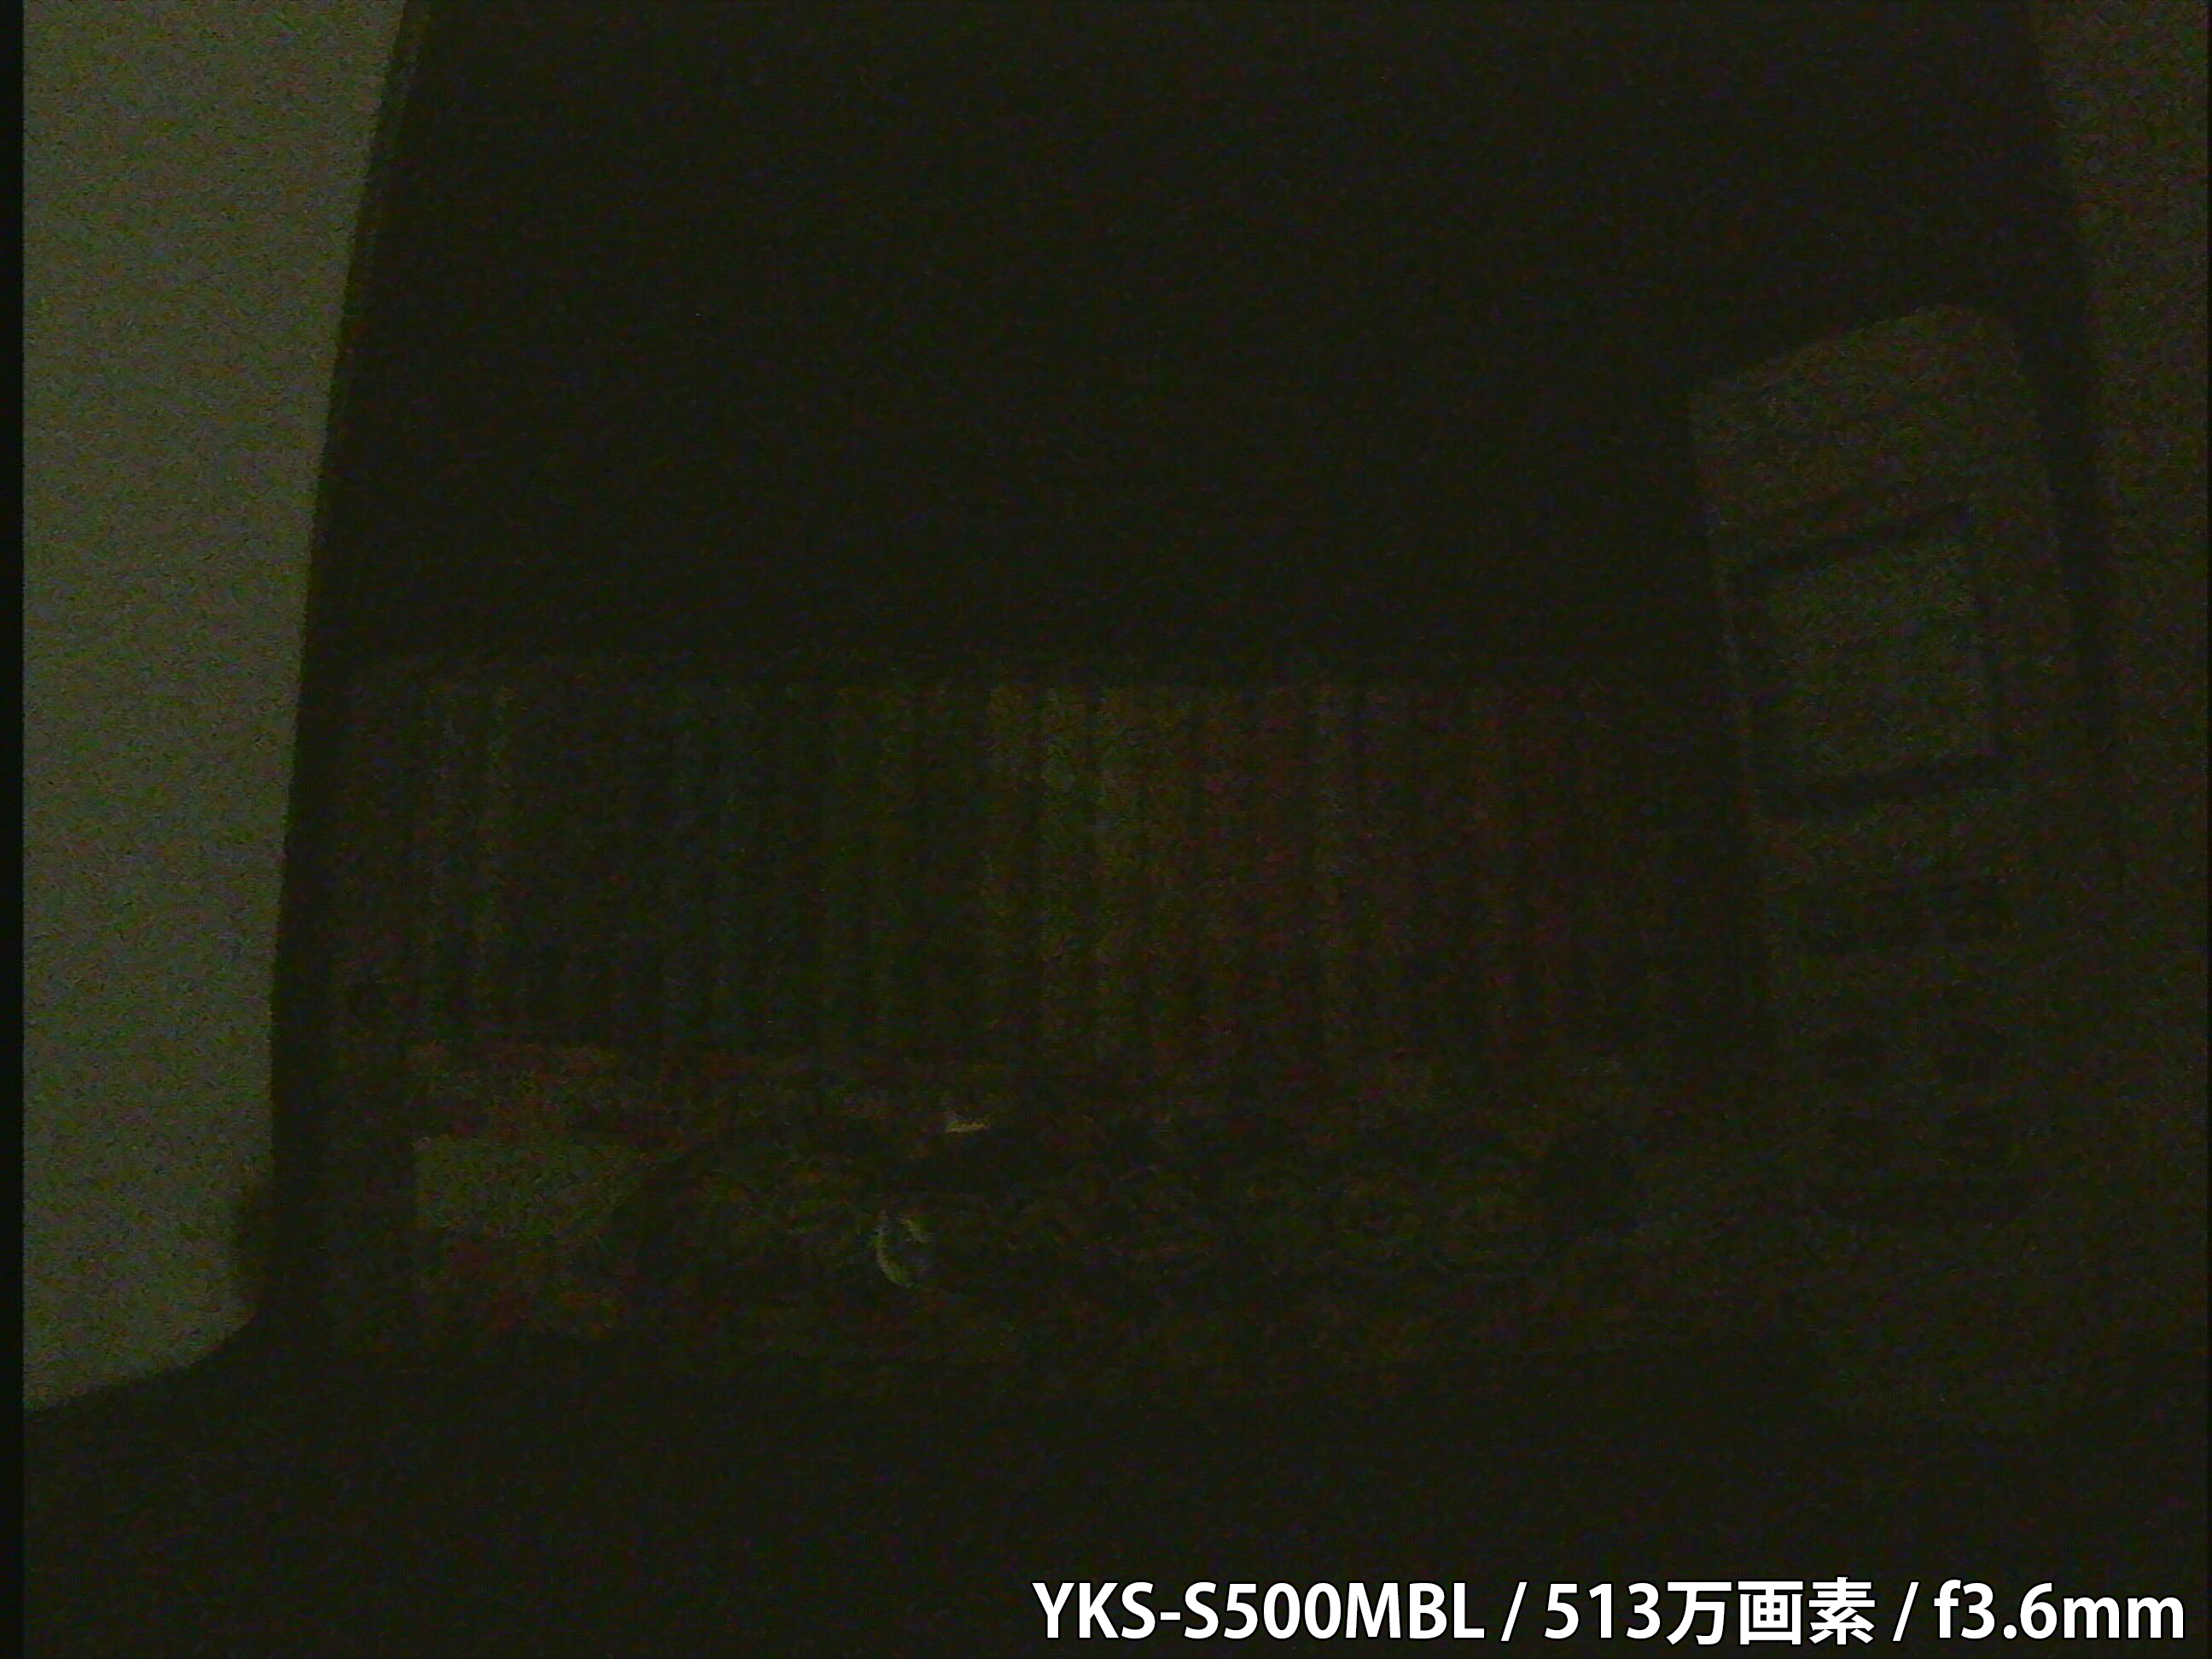 【YKS-S500MBL】カメラから約40cm離れた被写体を低照度撮影